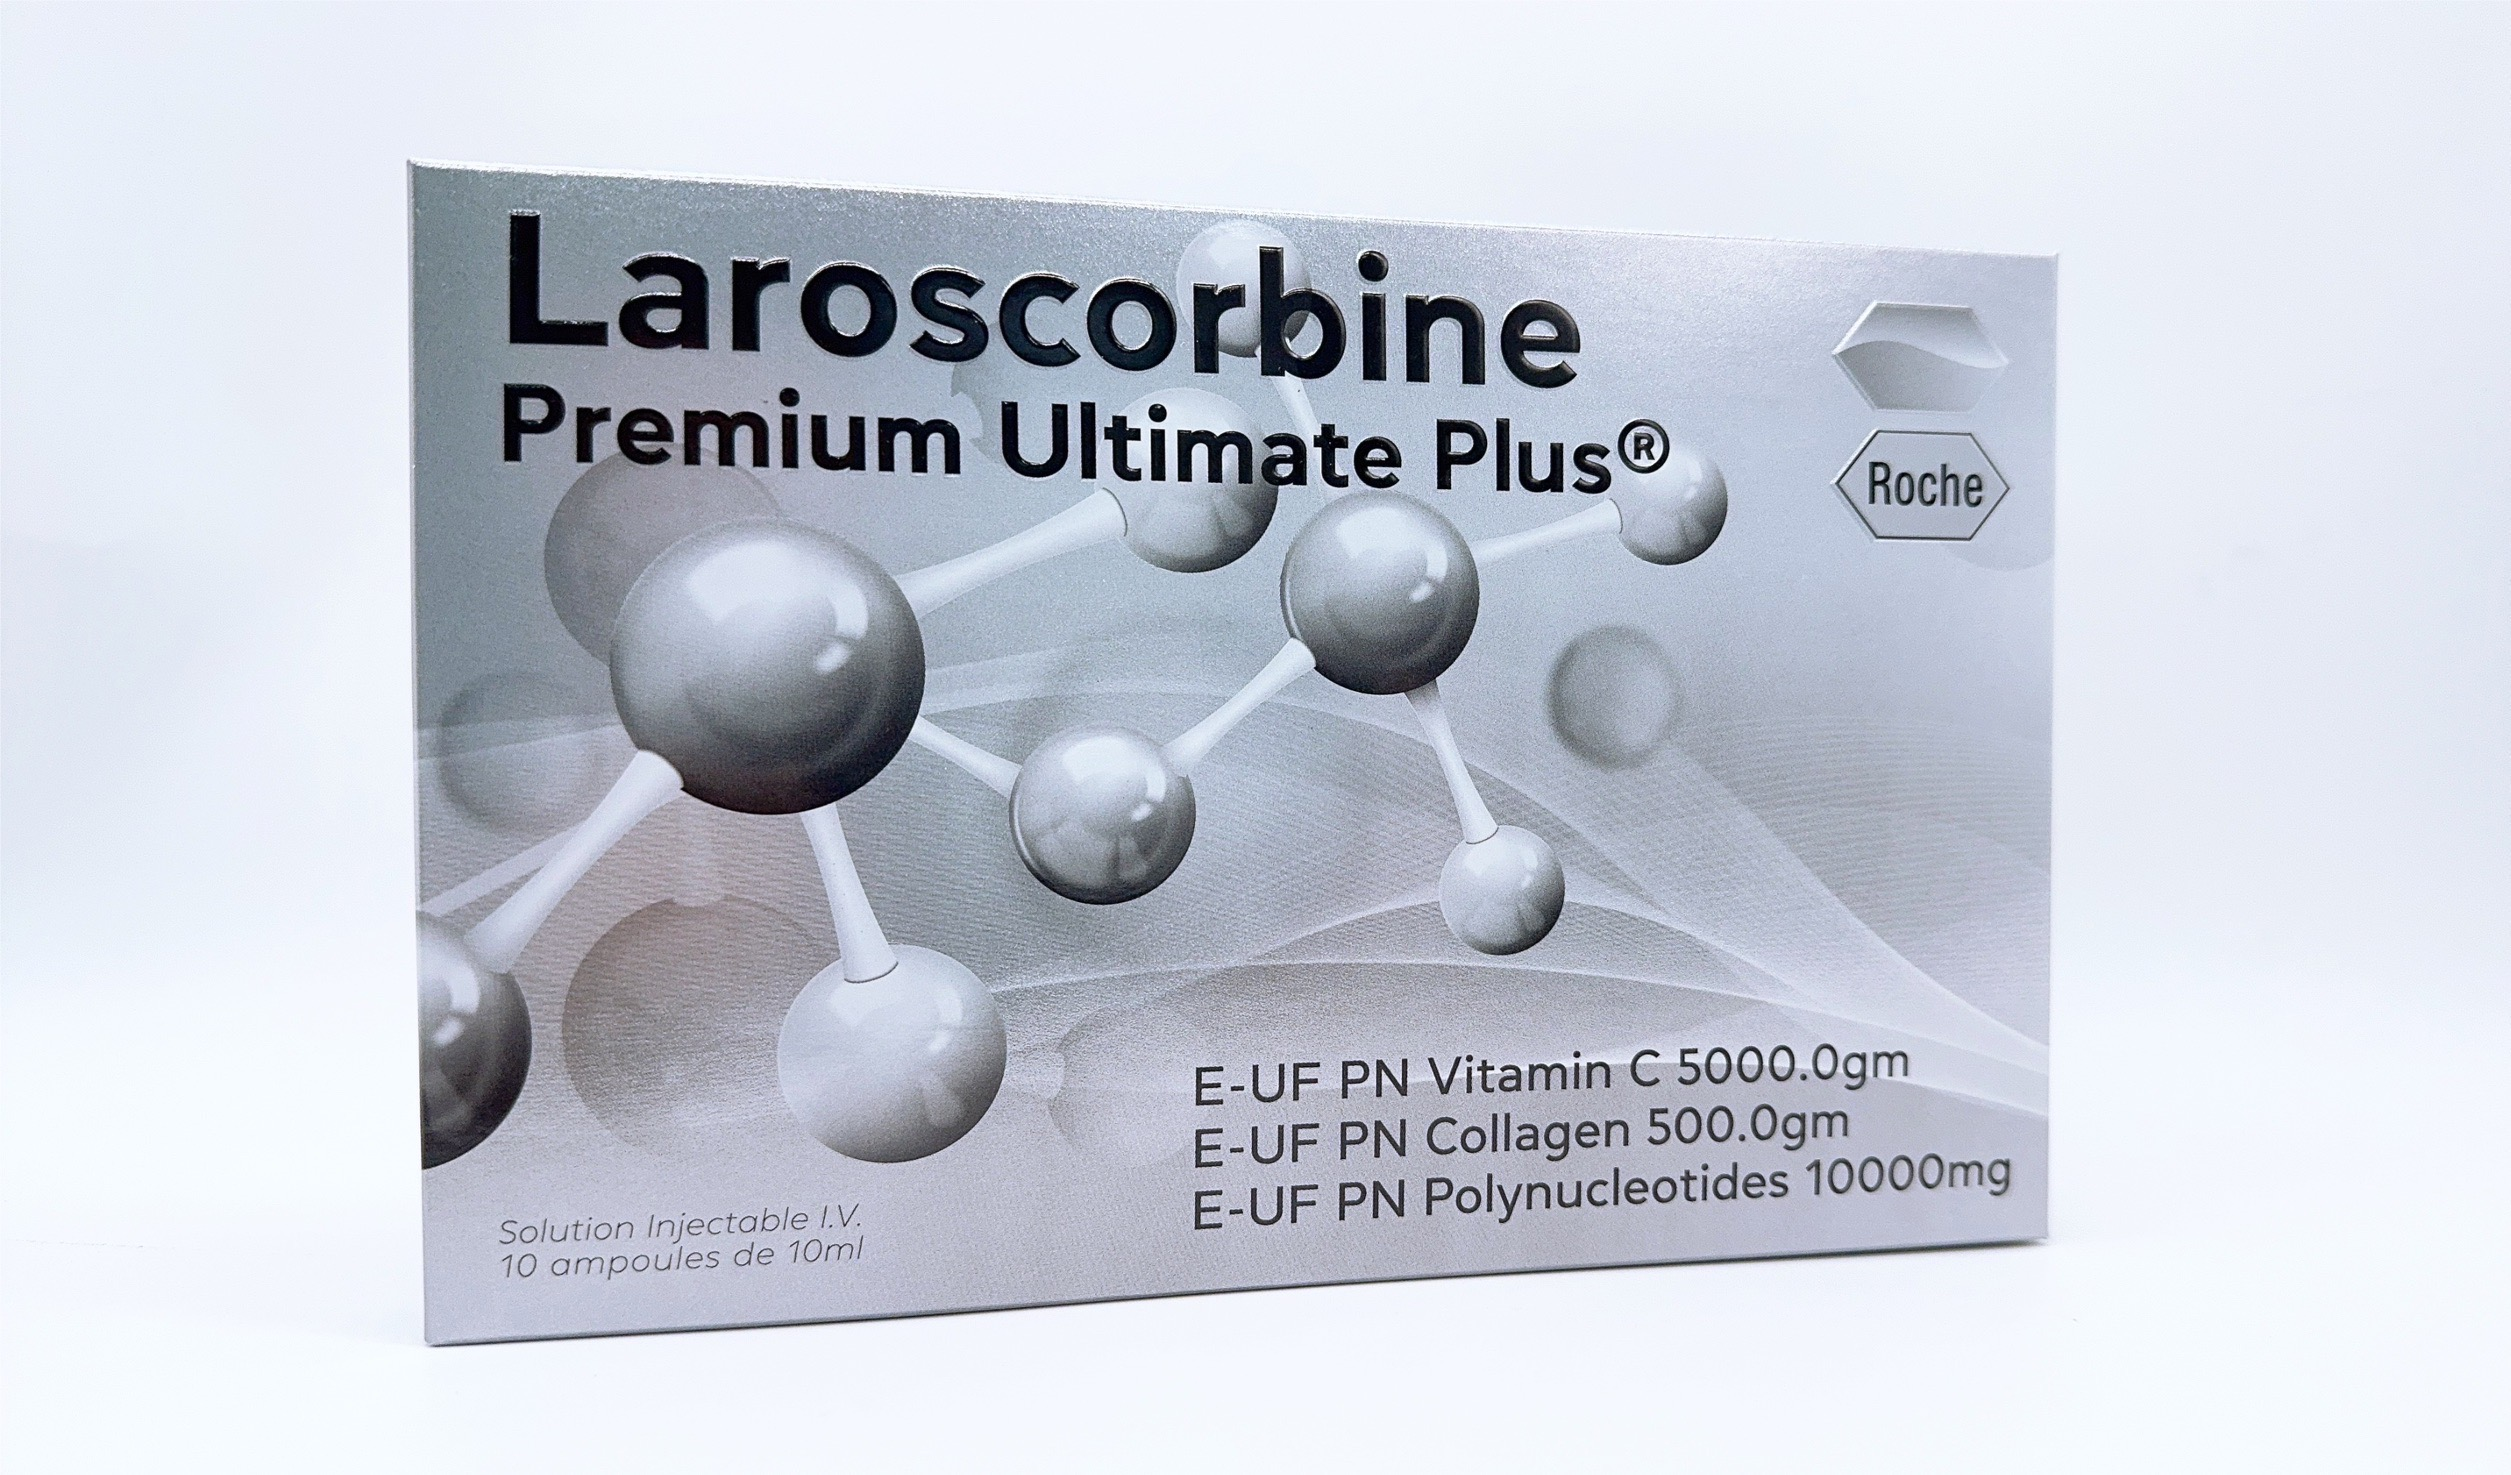 Laroscorbine Premium Ultimate Plus